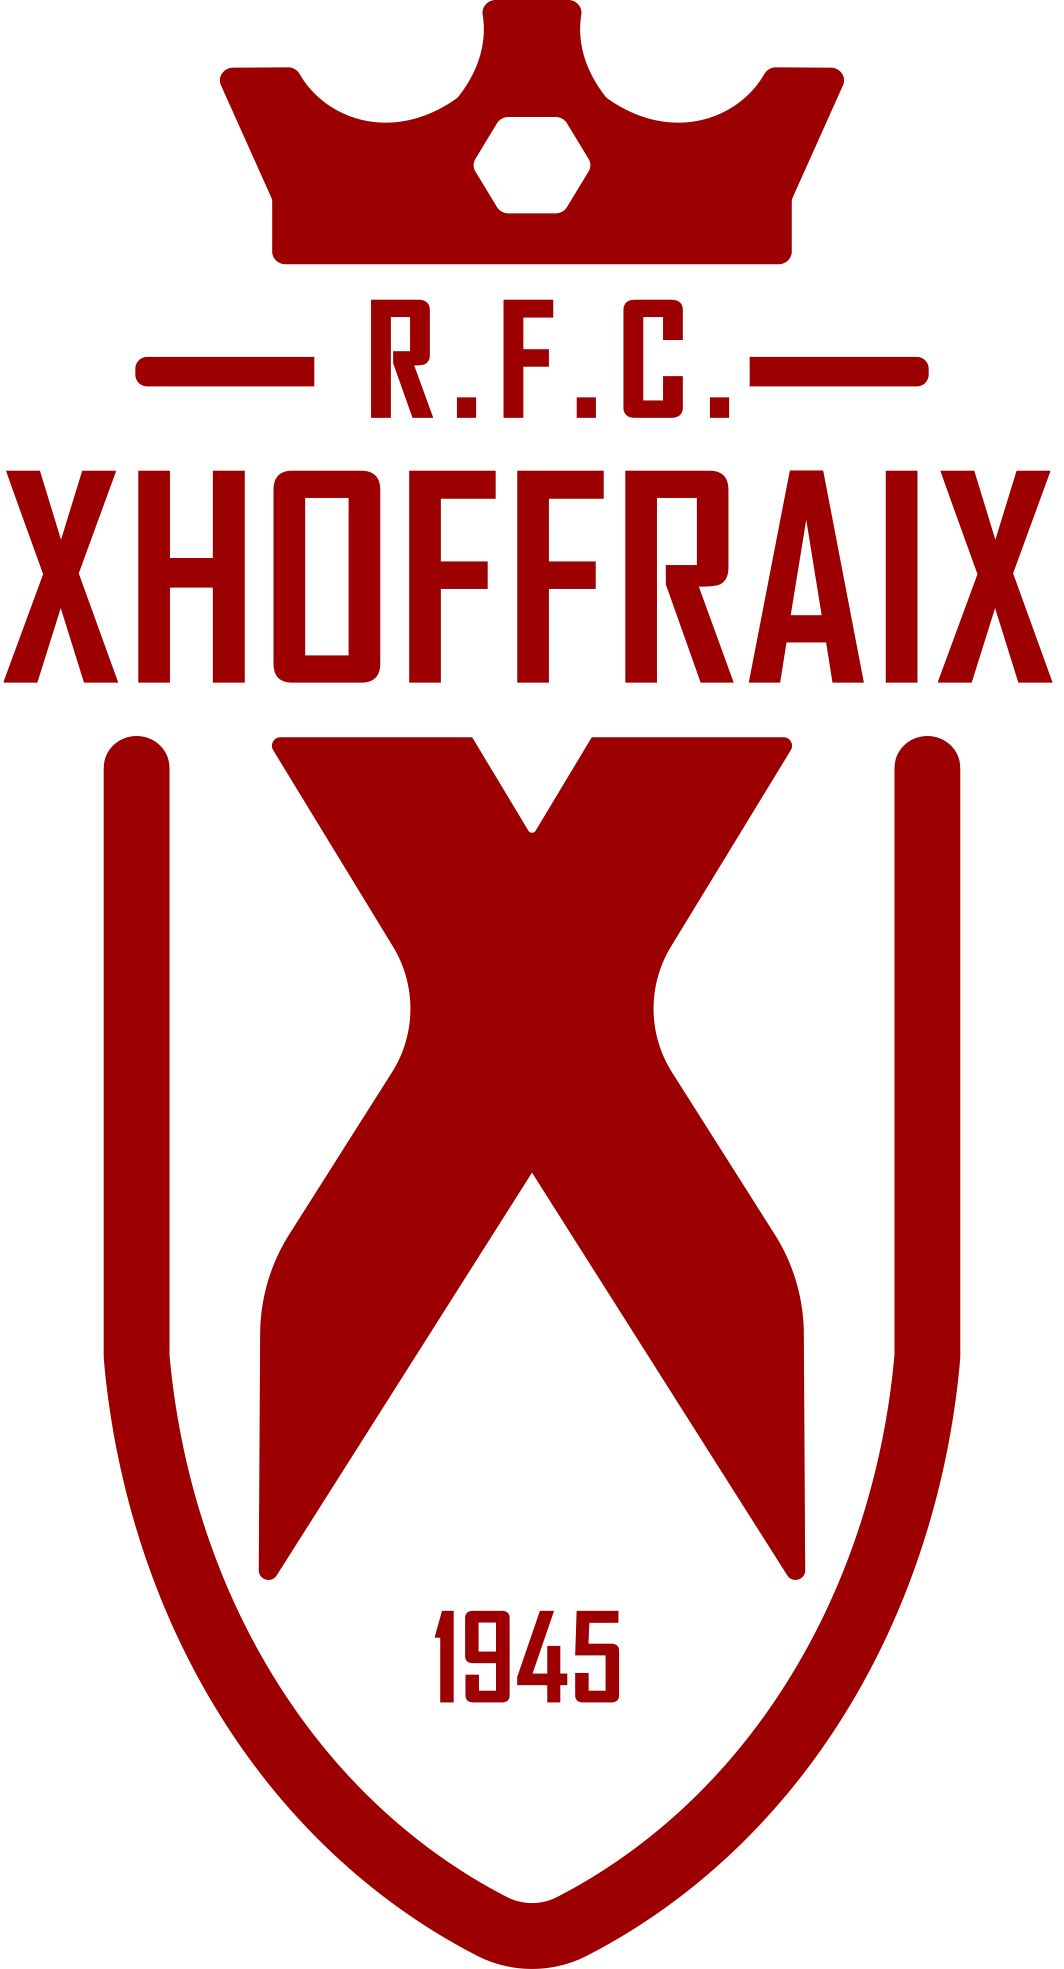 2 - R.F.C. Xhoffraix